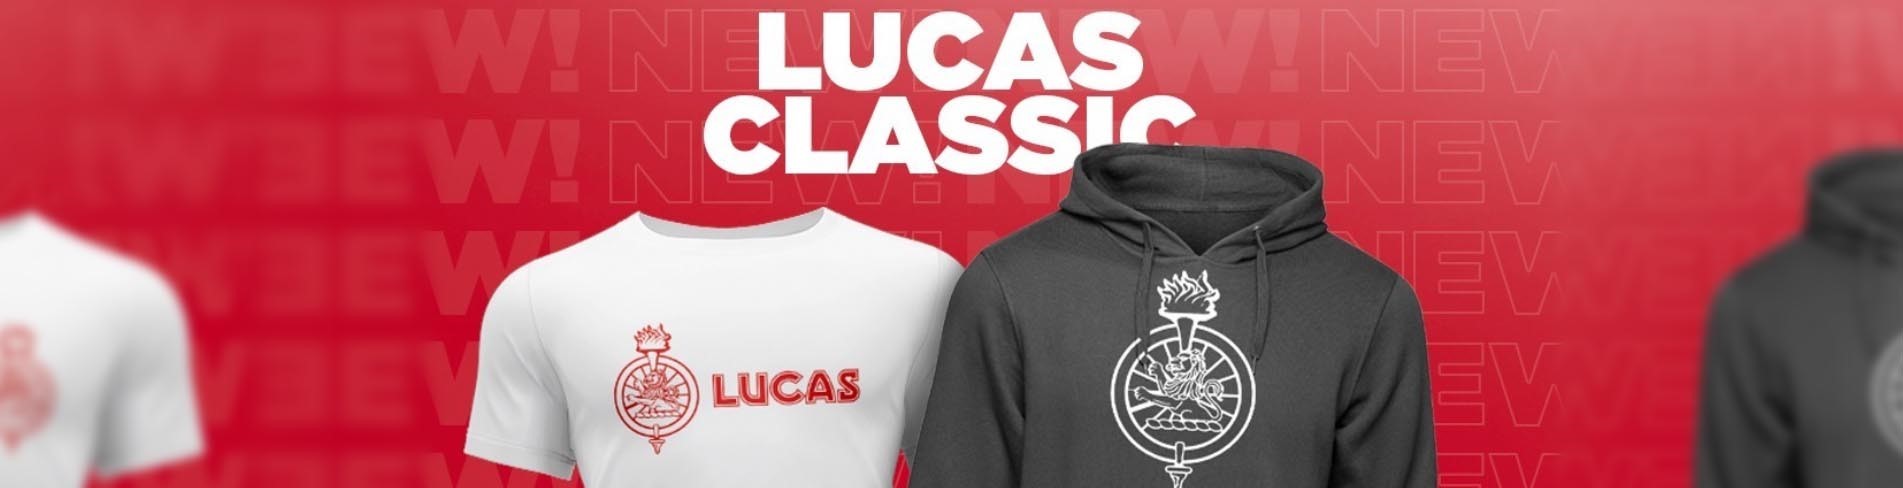 Lucas Classic 